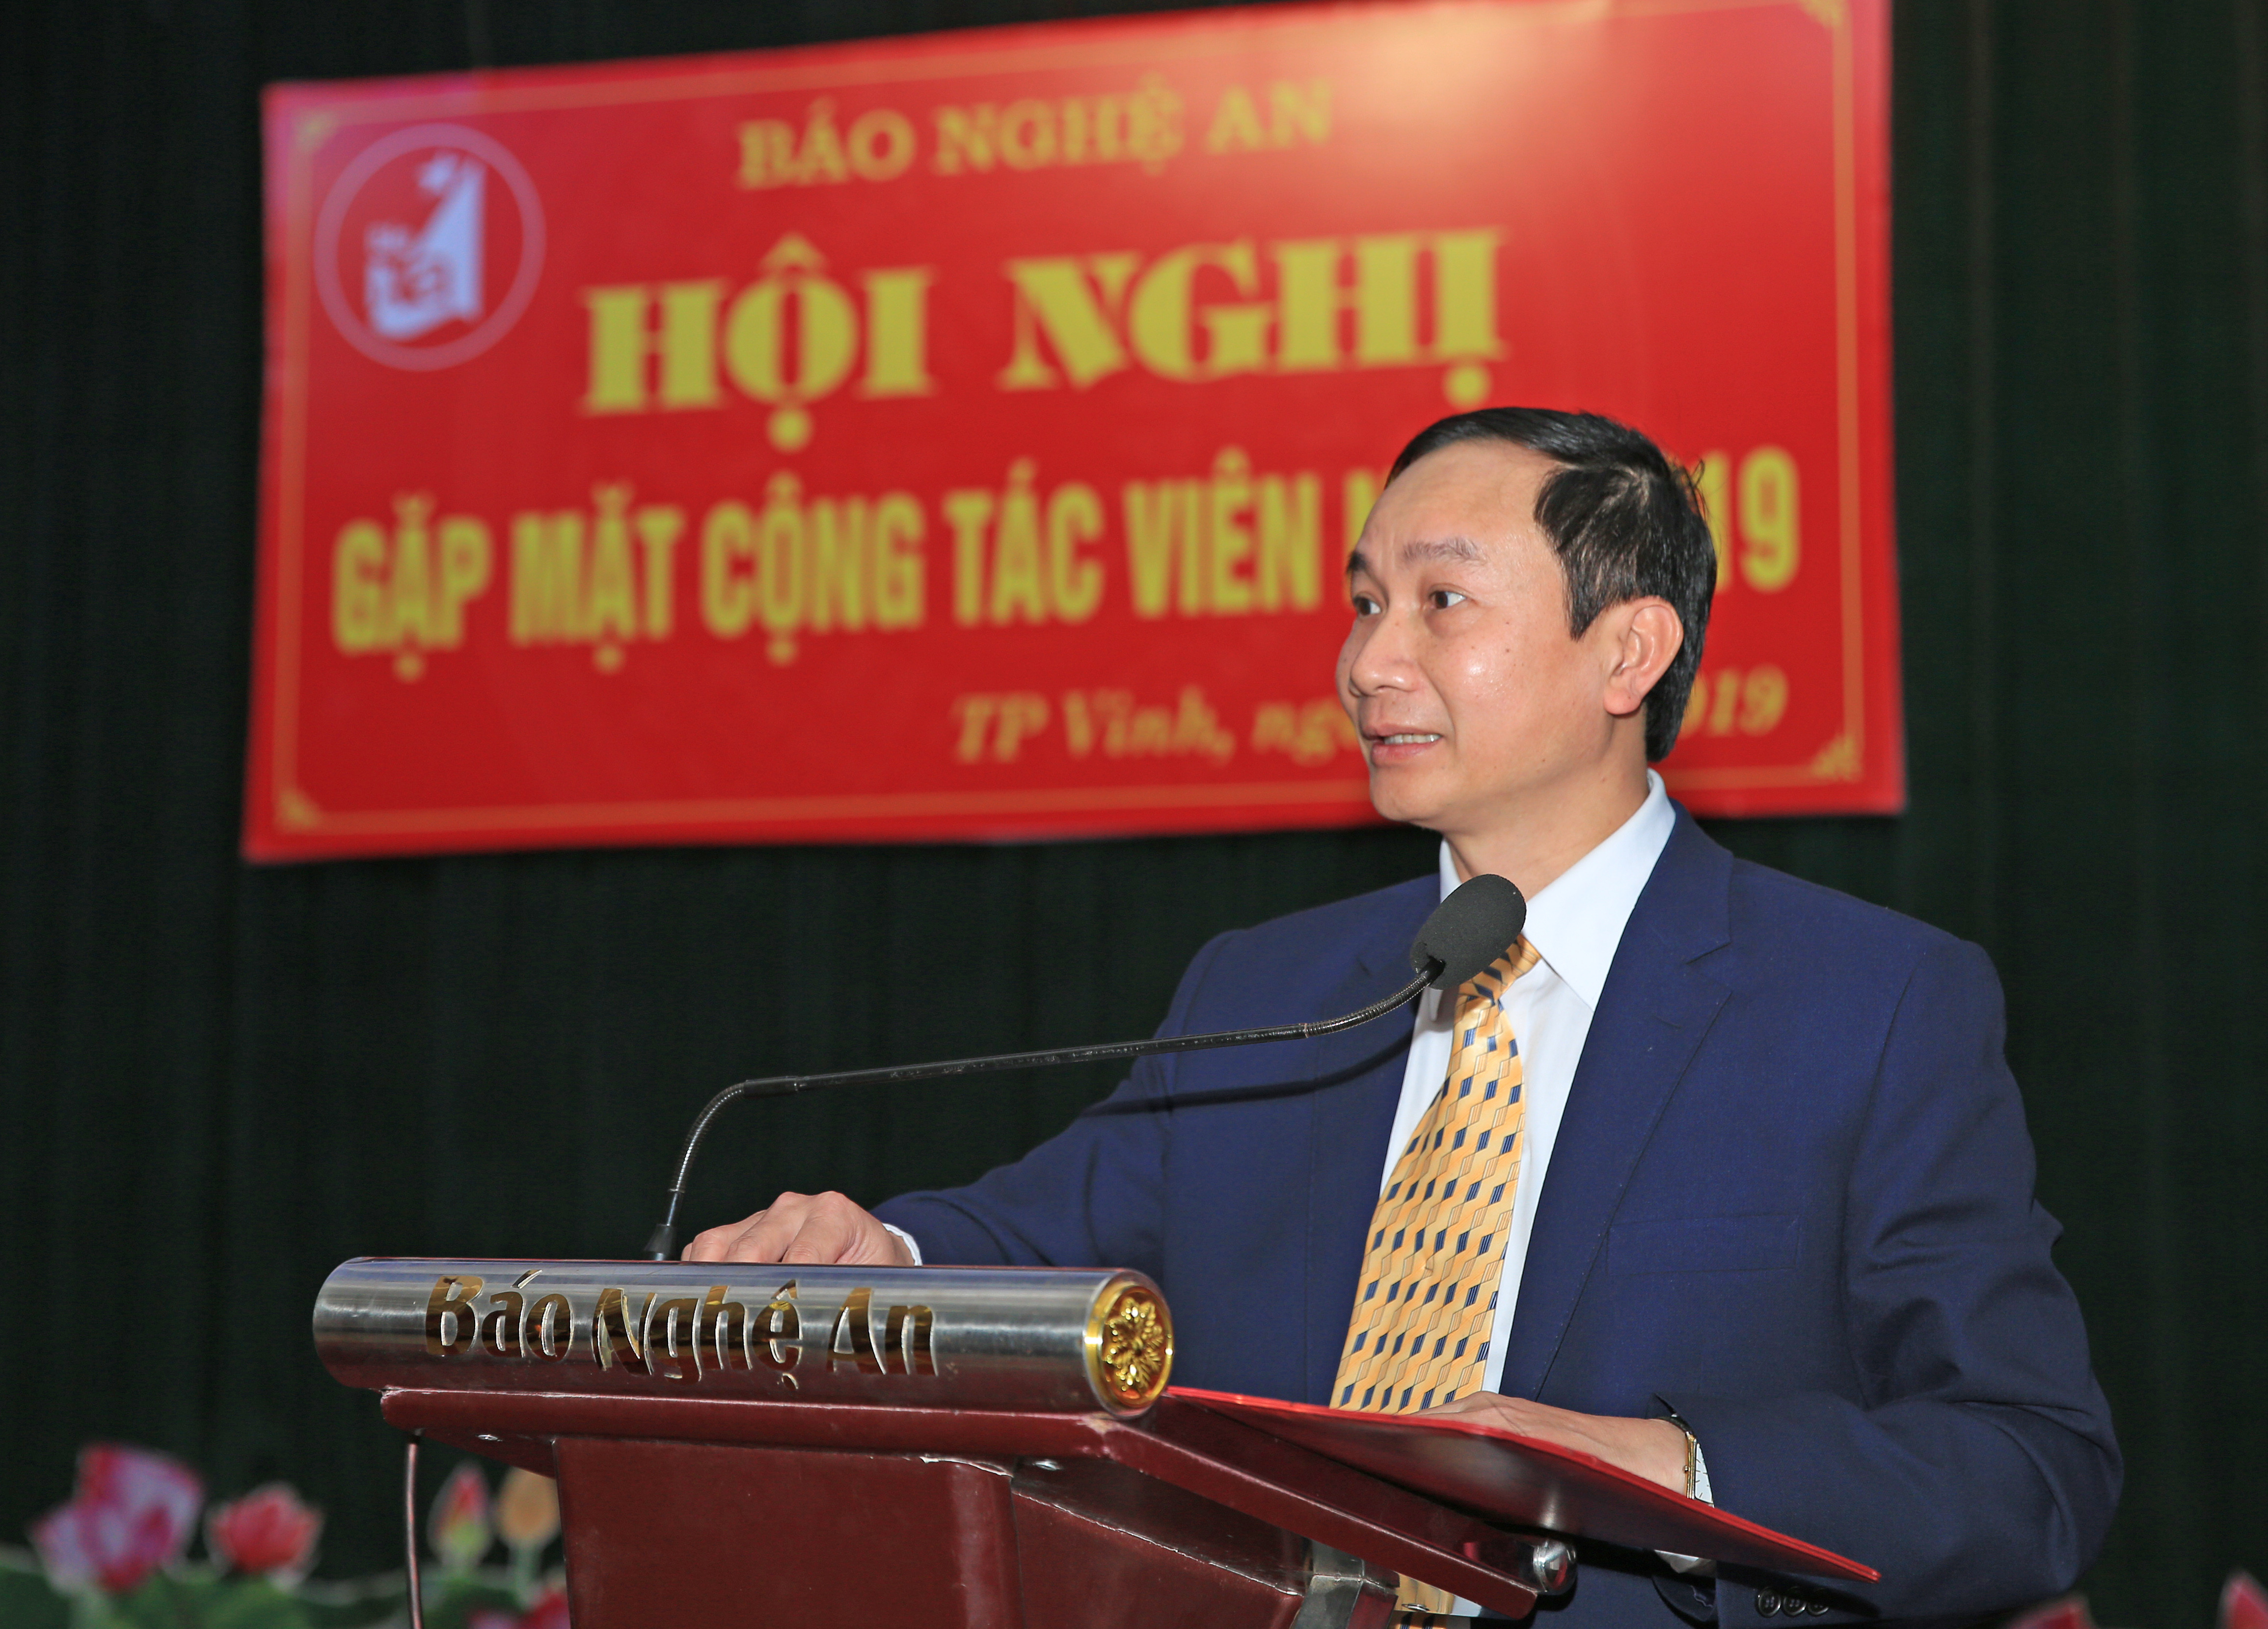 Đồng chí Trần Văn Hùng - Phó Tổng biên tập Báo Nghệ An khẳng định vai trò của các cộng tác viên đến sự thành công của Báo Nghệ An trong thời gian qua. Ảnh: Hồ Phương